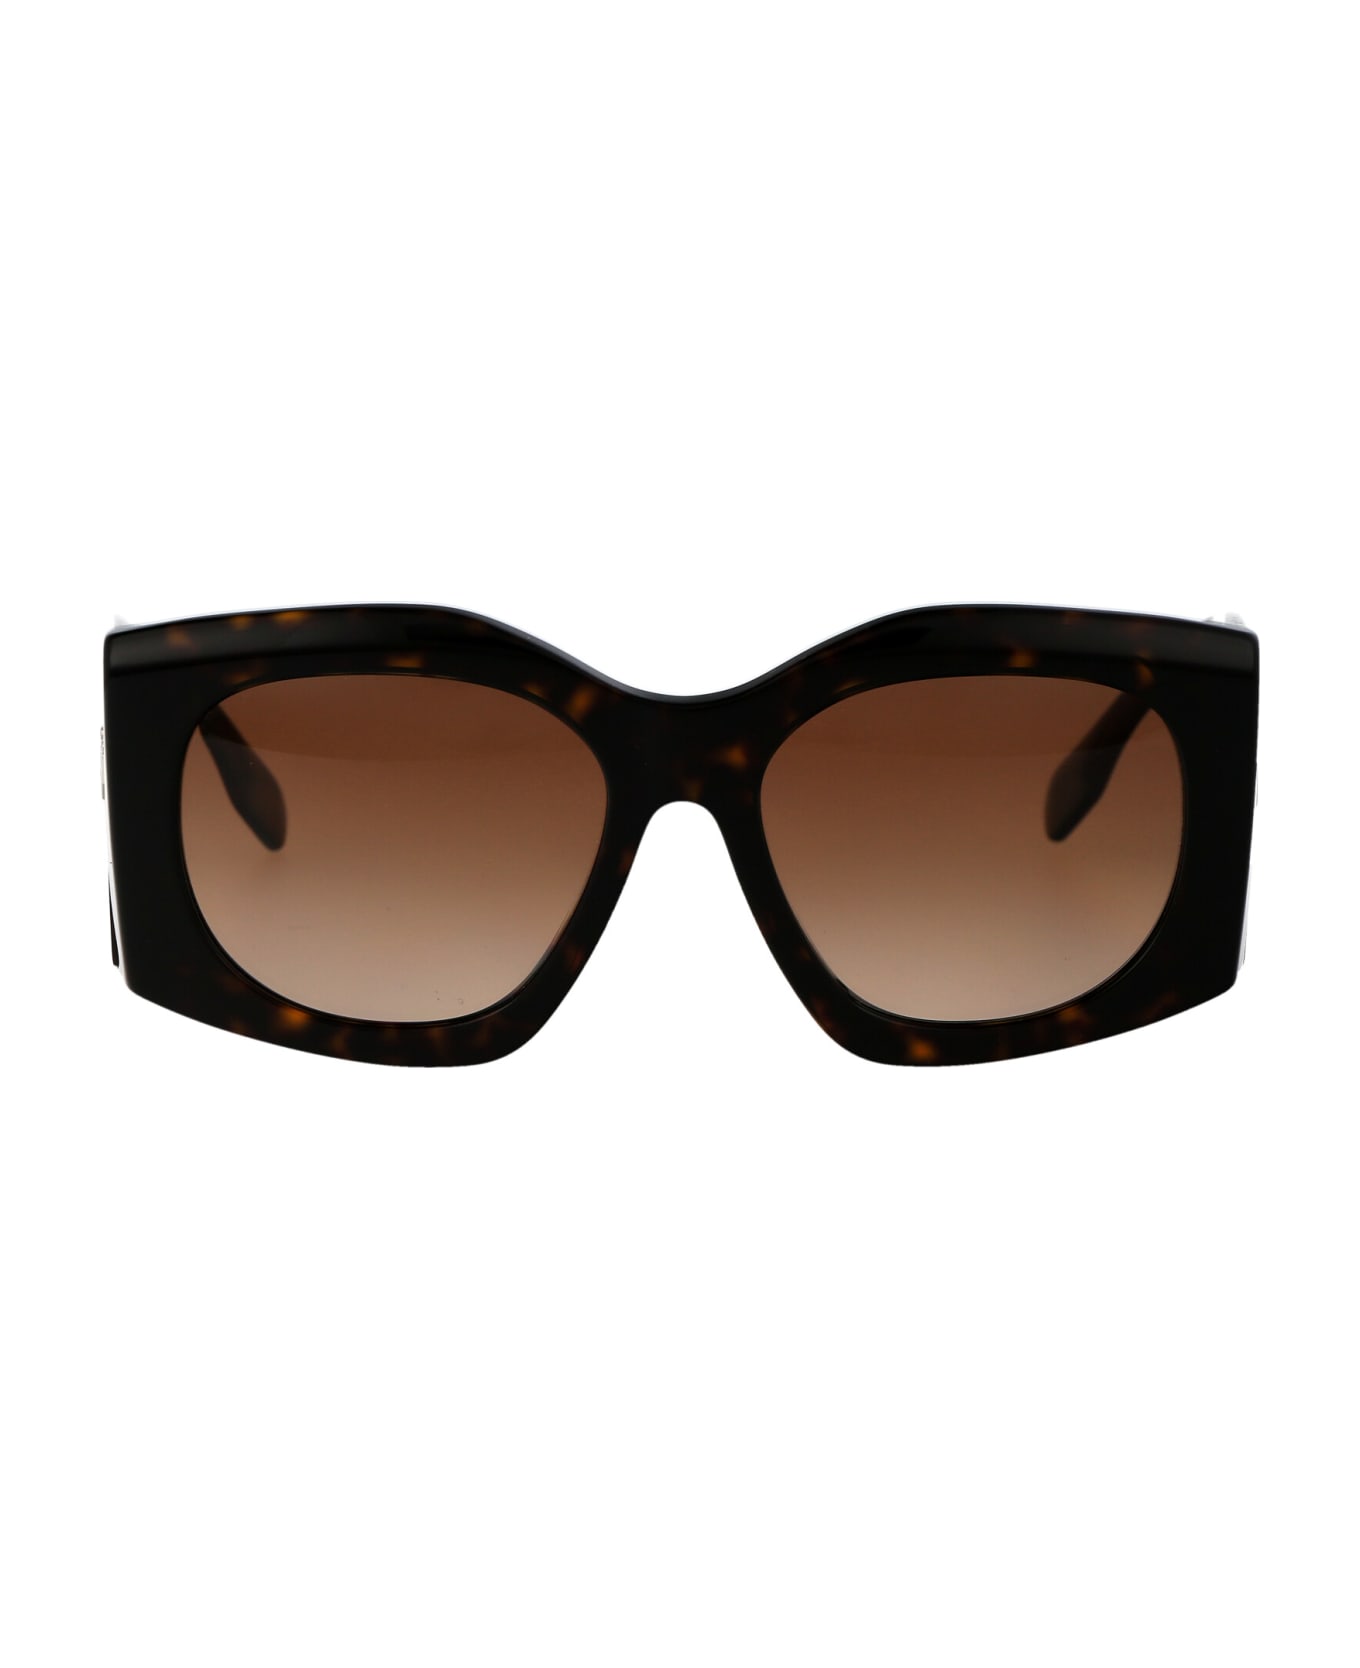 Burberry Eyewear Madeline Sunglasses - 300213 DARK HAVANA